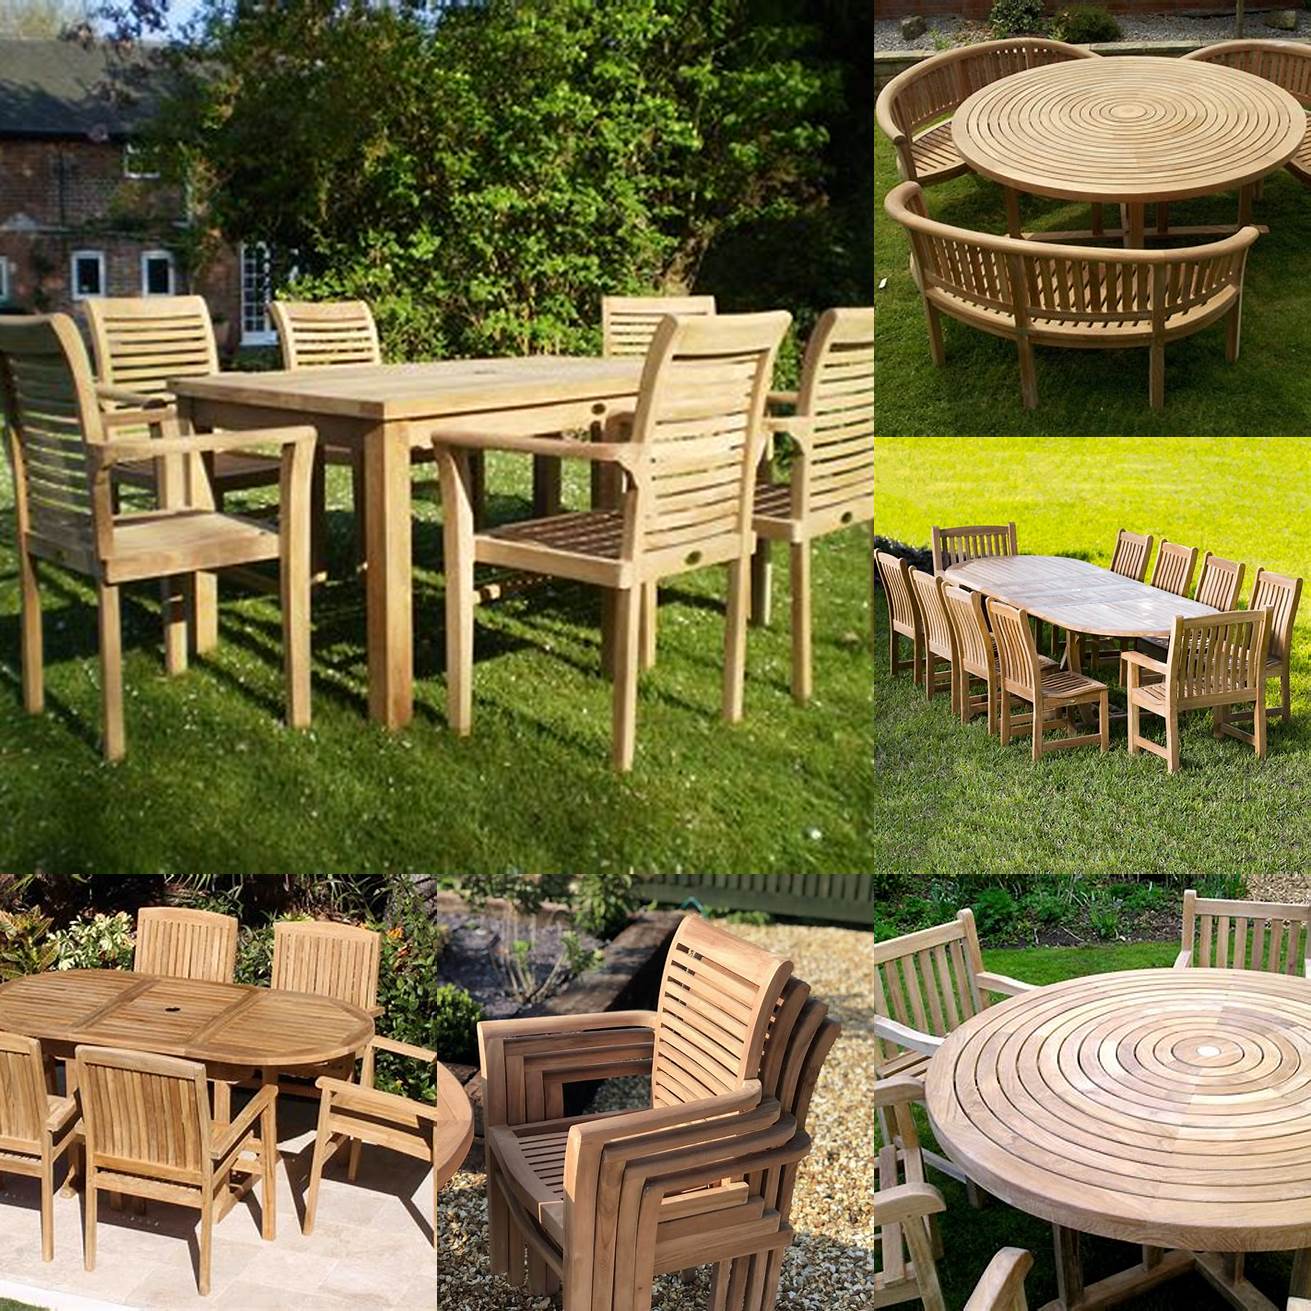 Pictures of teak garden furniture